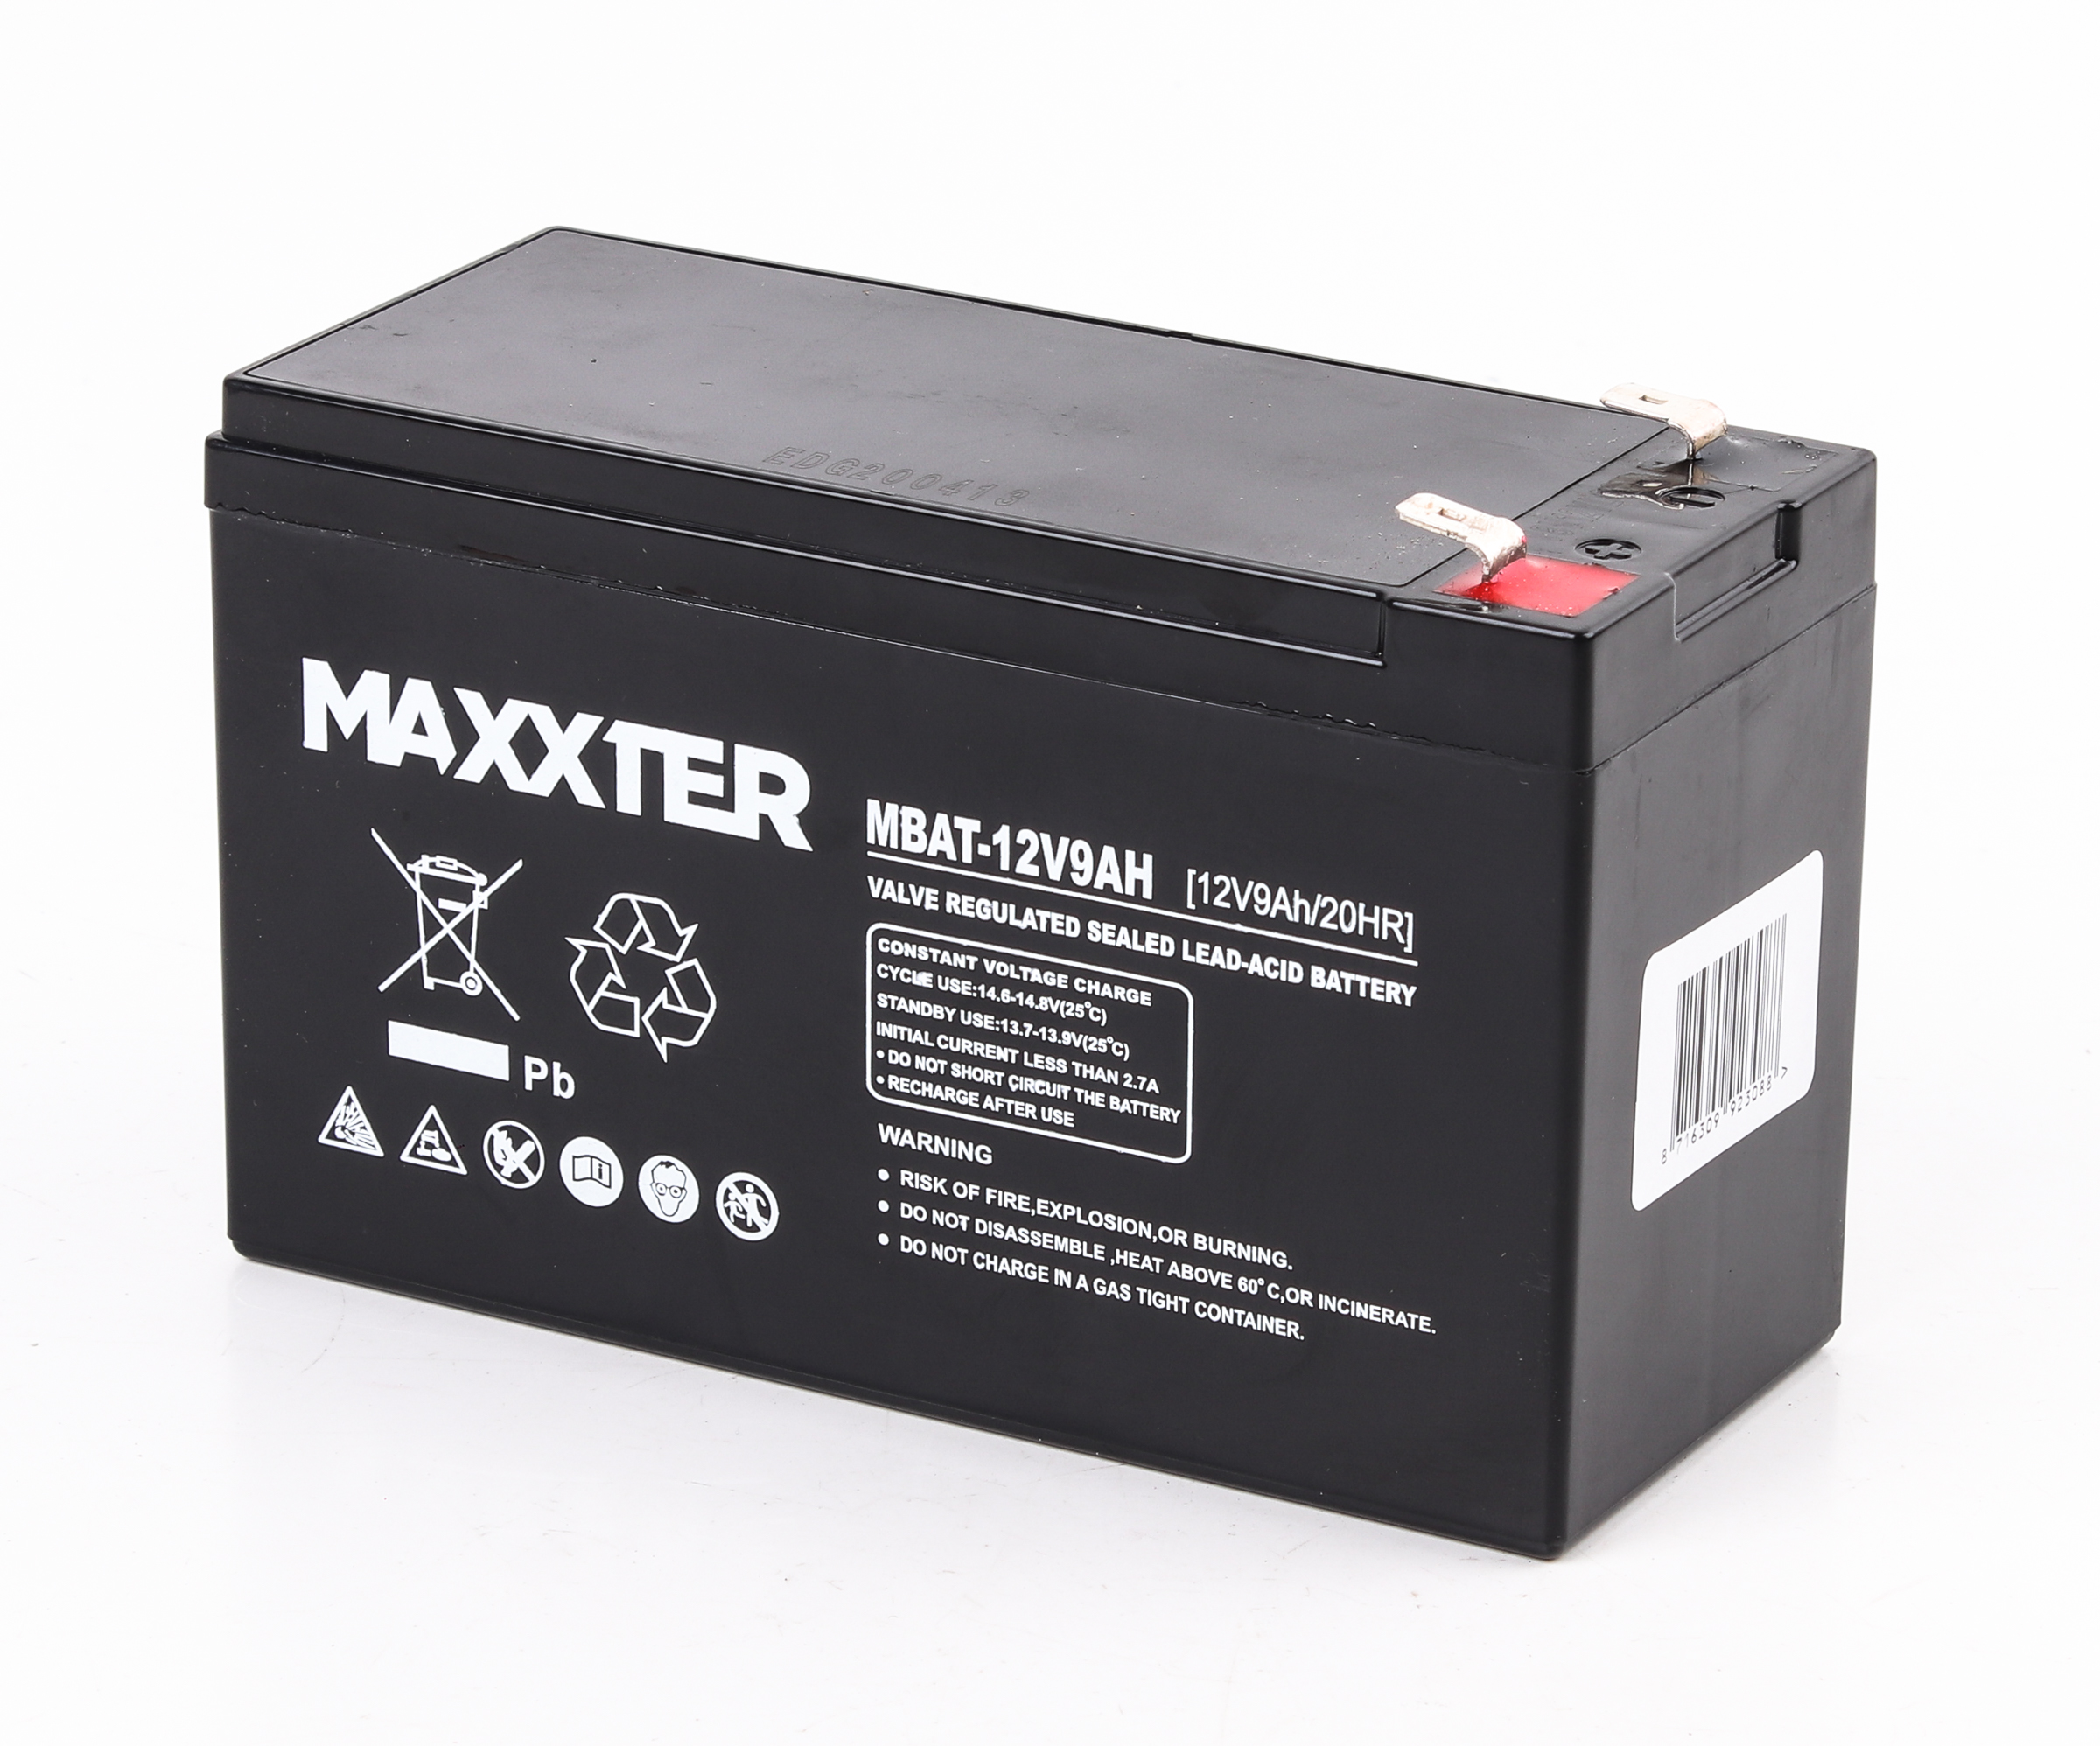 Купить аккумулятор Maxxter MBAT-12V9AH в Киеве